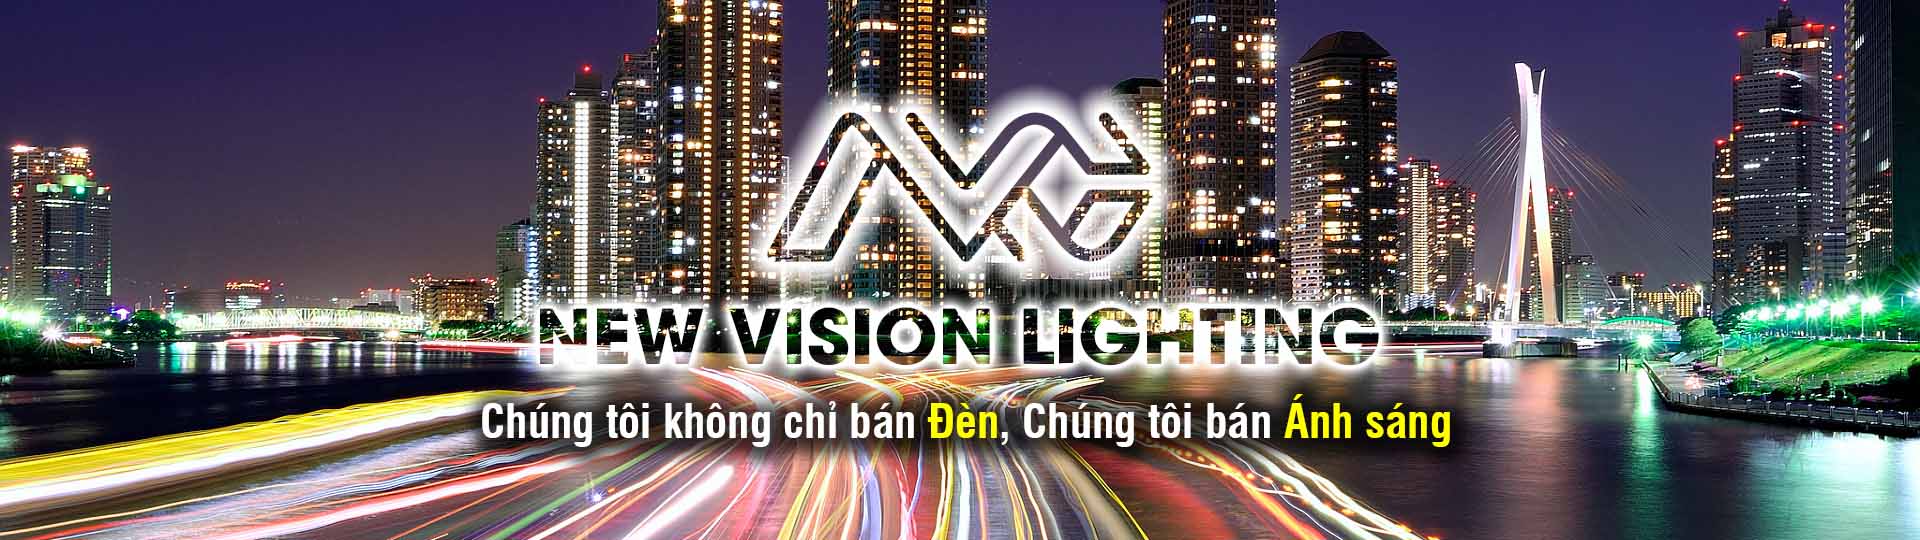 New Vision Lighting - Chúng tôi không chỉ bán Đèn, Chúng tôi bán Ánh sáng